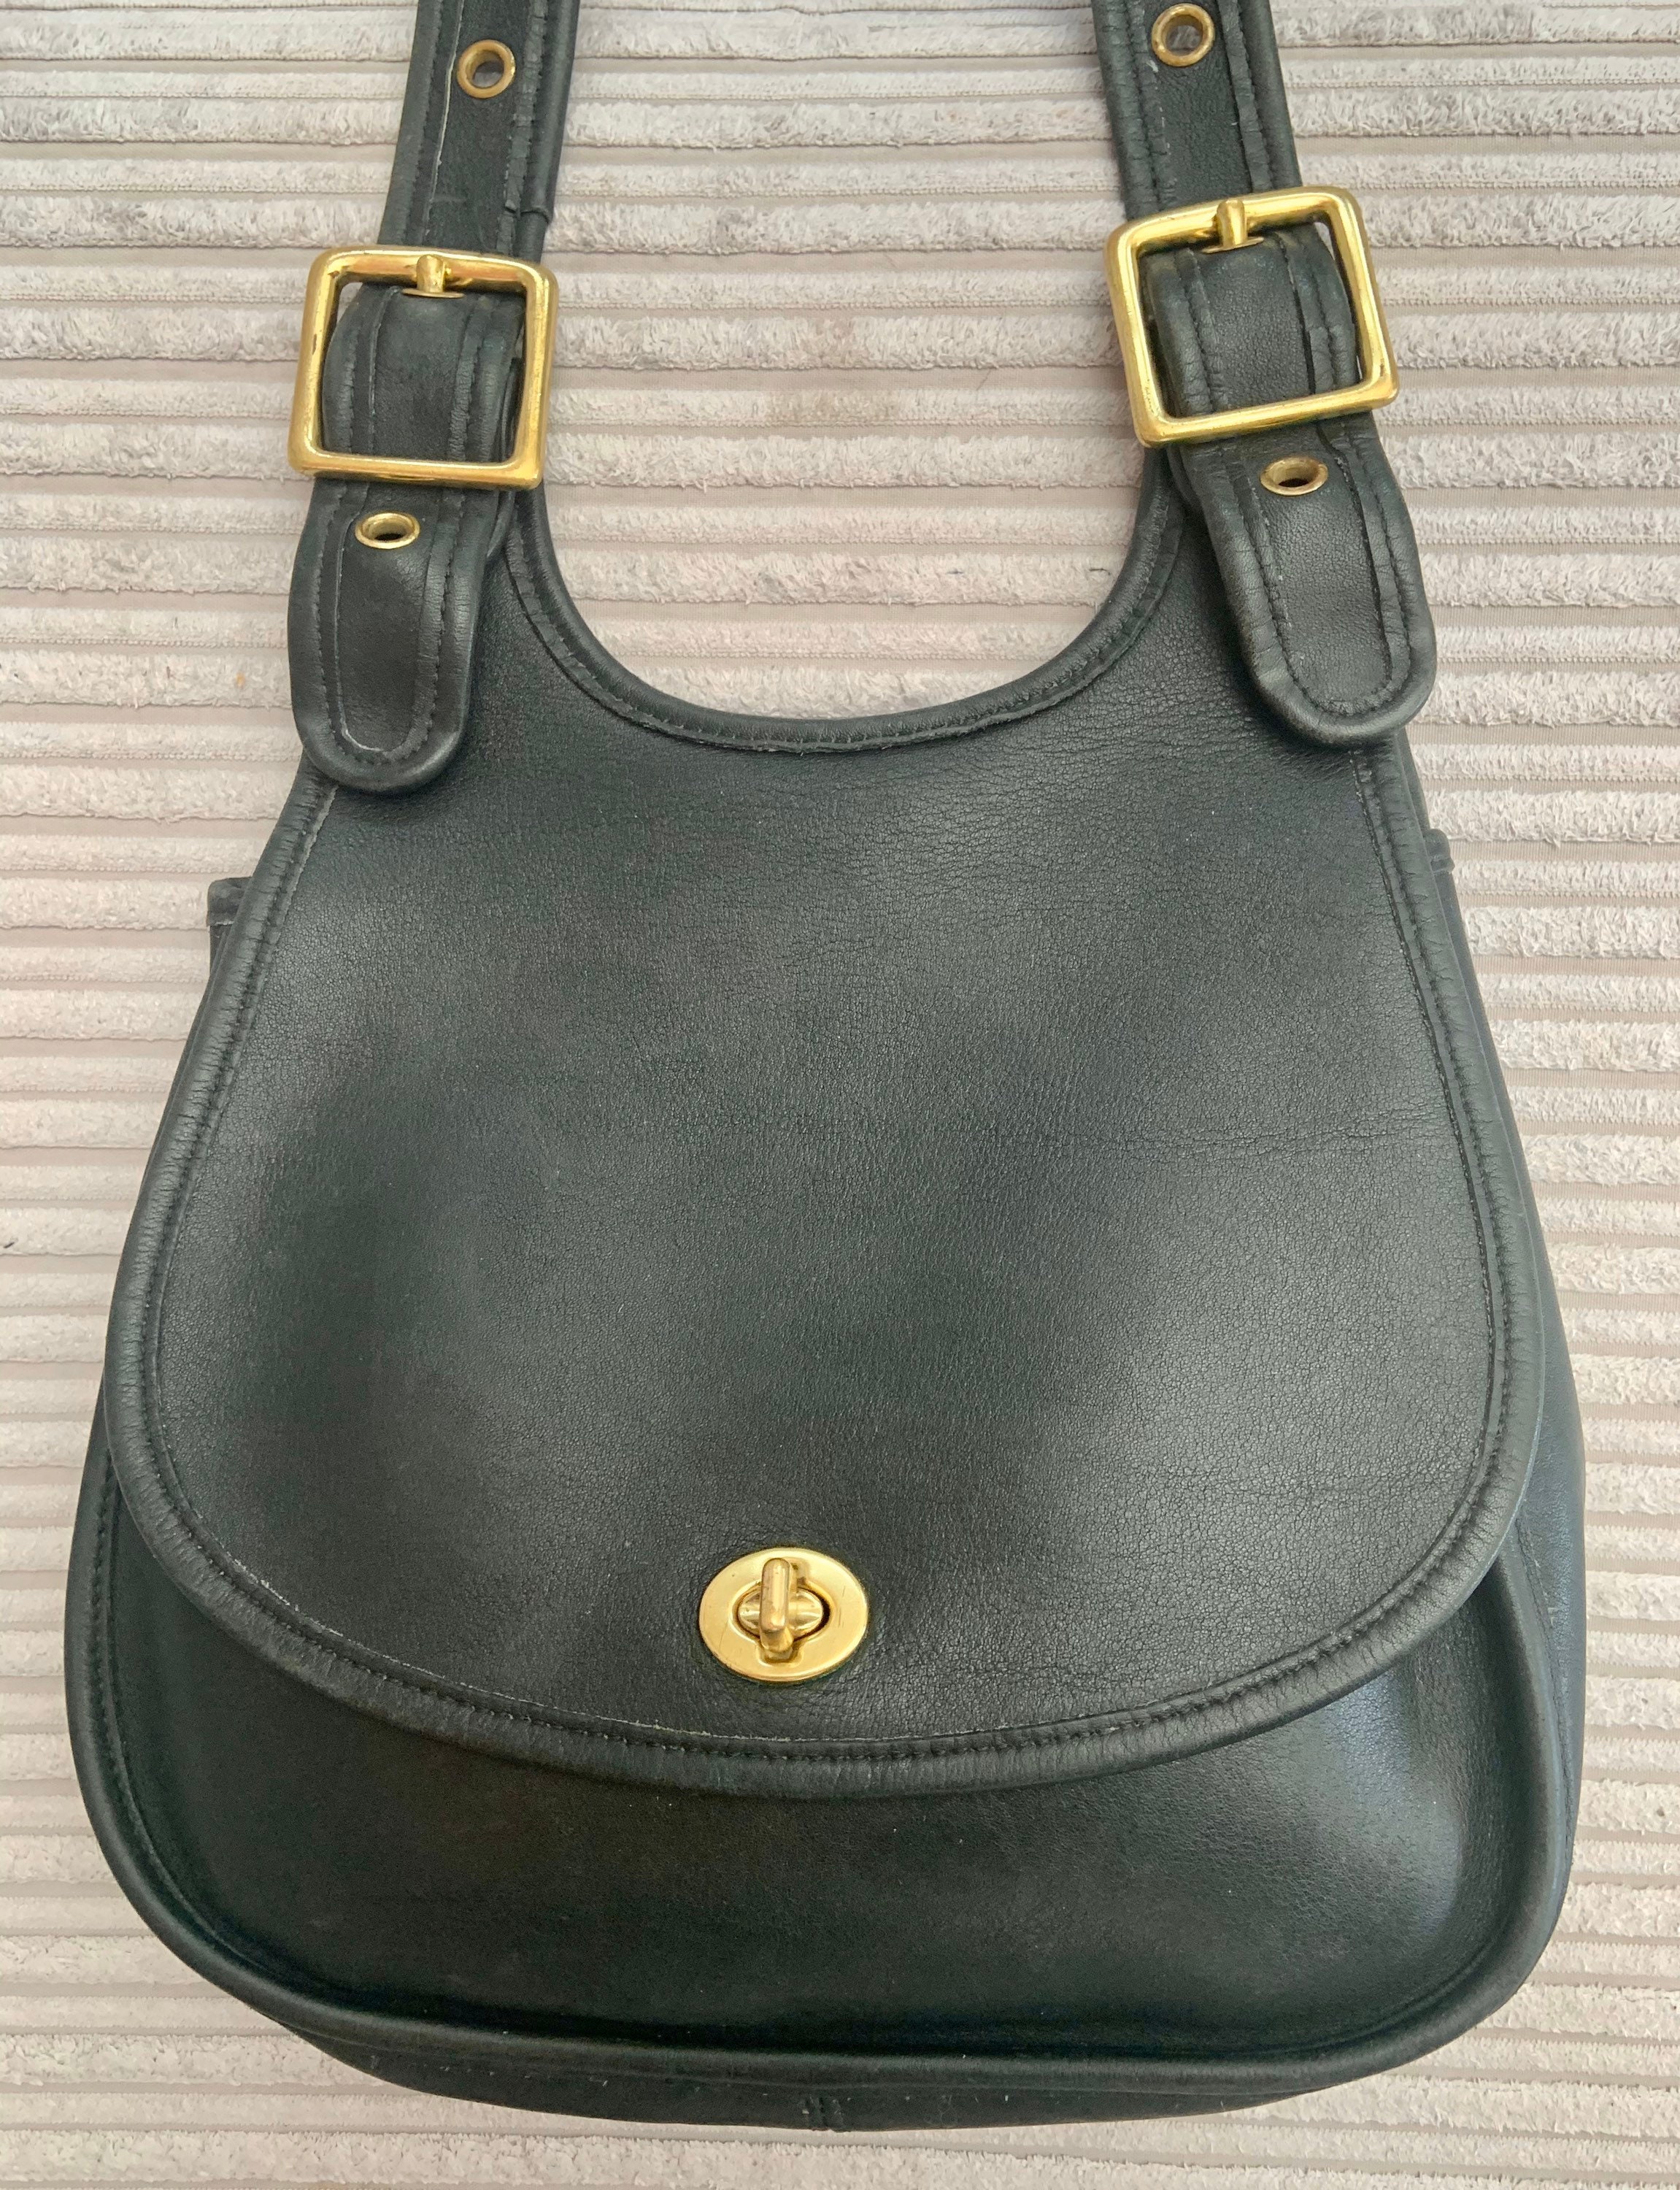 Solid Color Retro Crescent Bag, Casual Simple Felt Hobo Bag